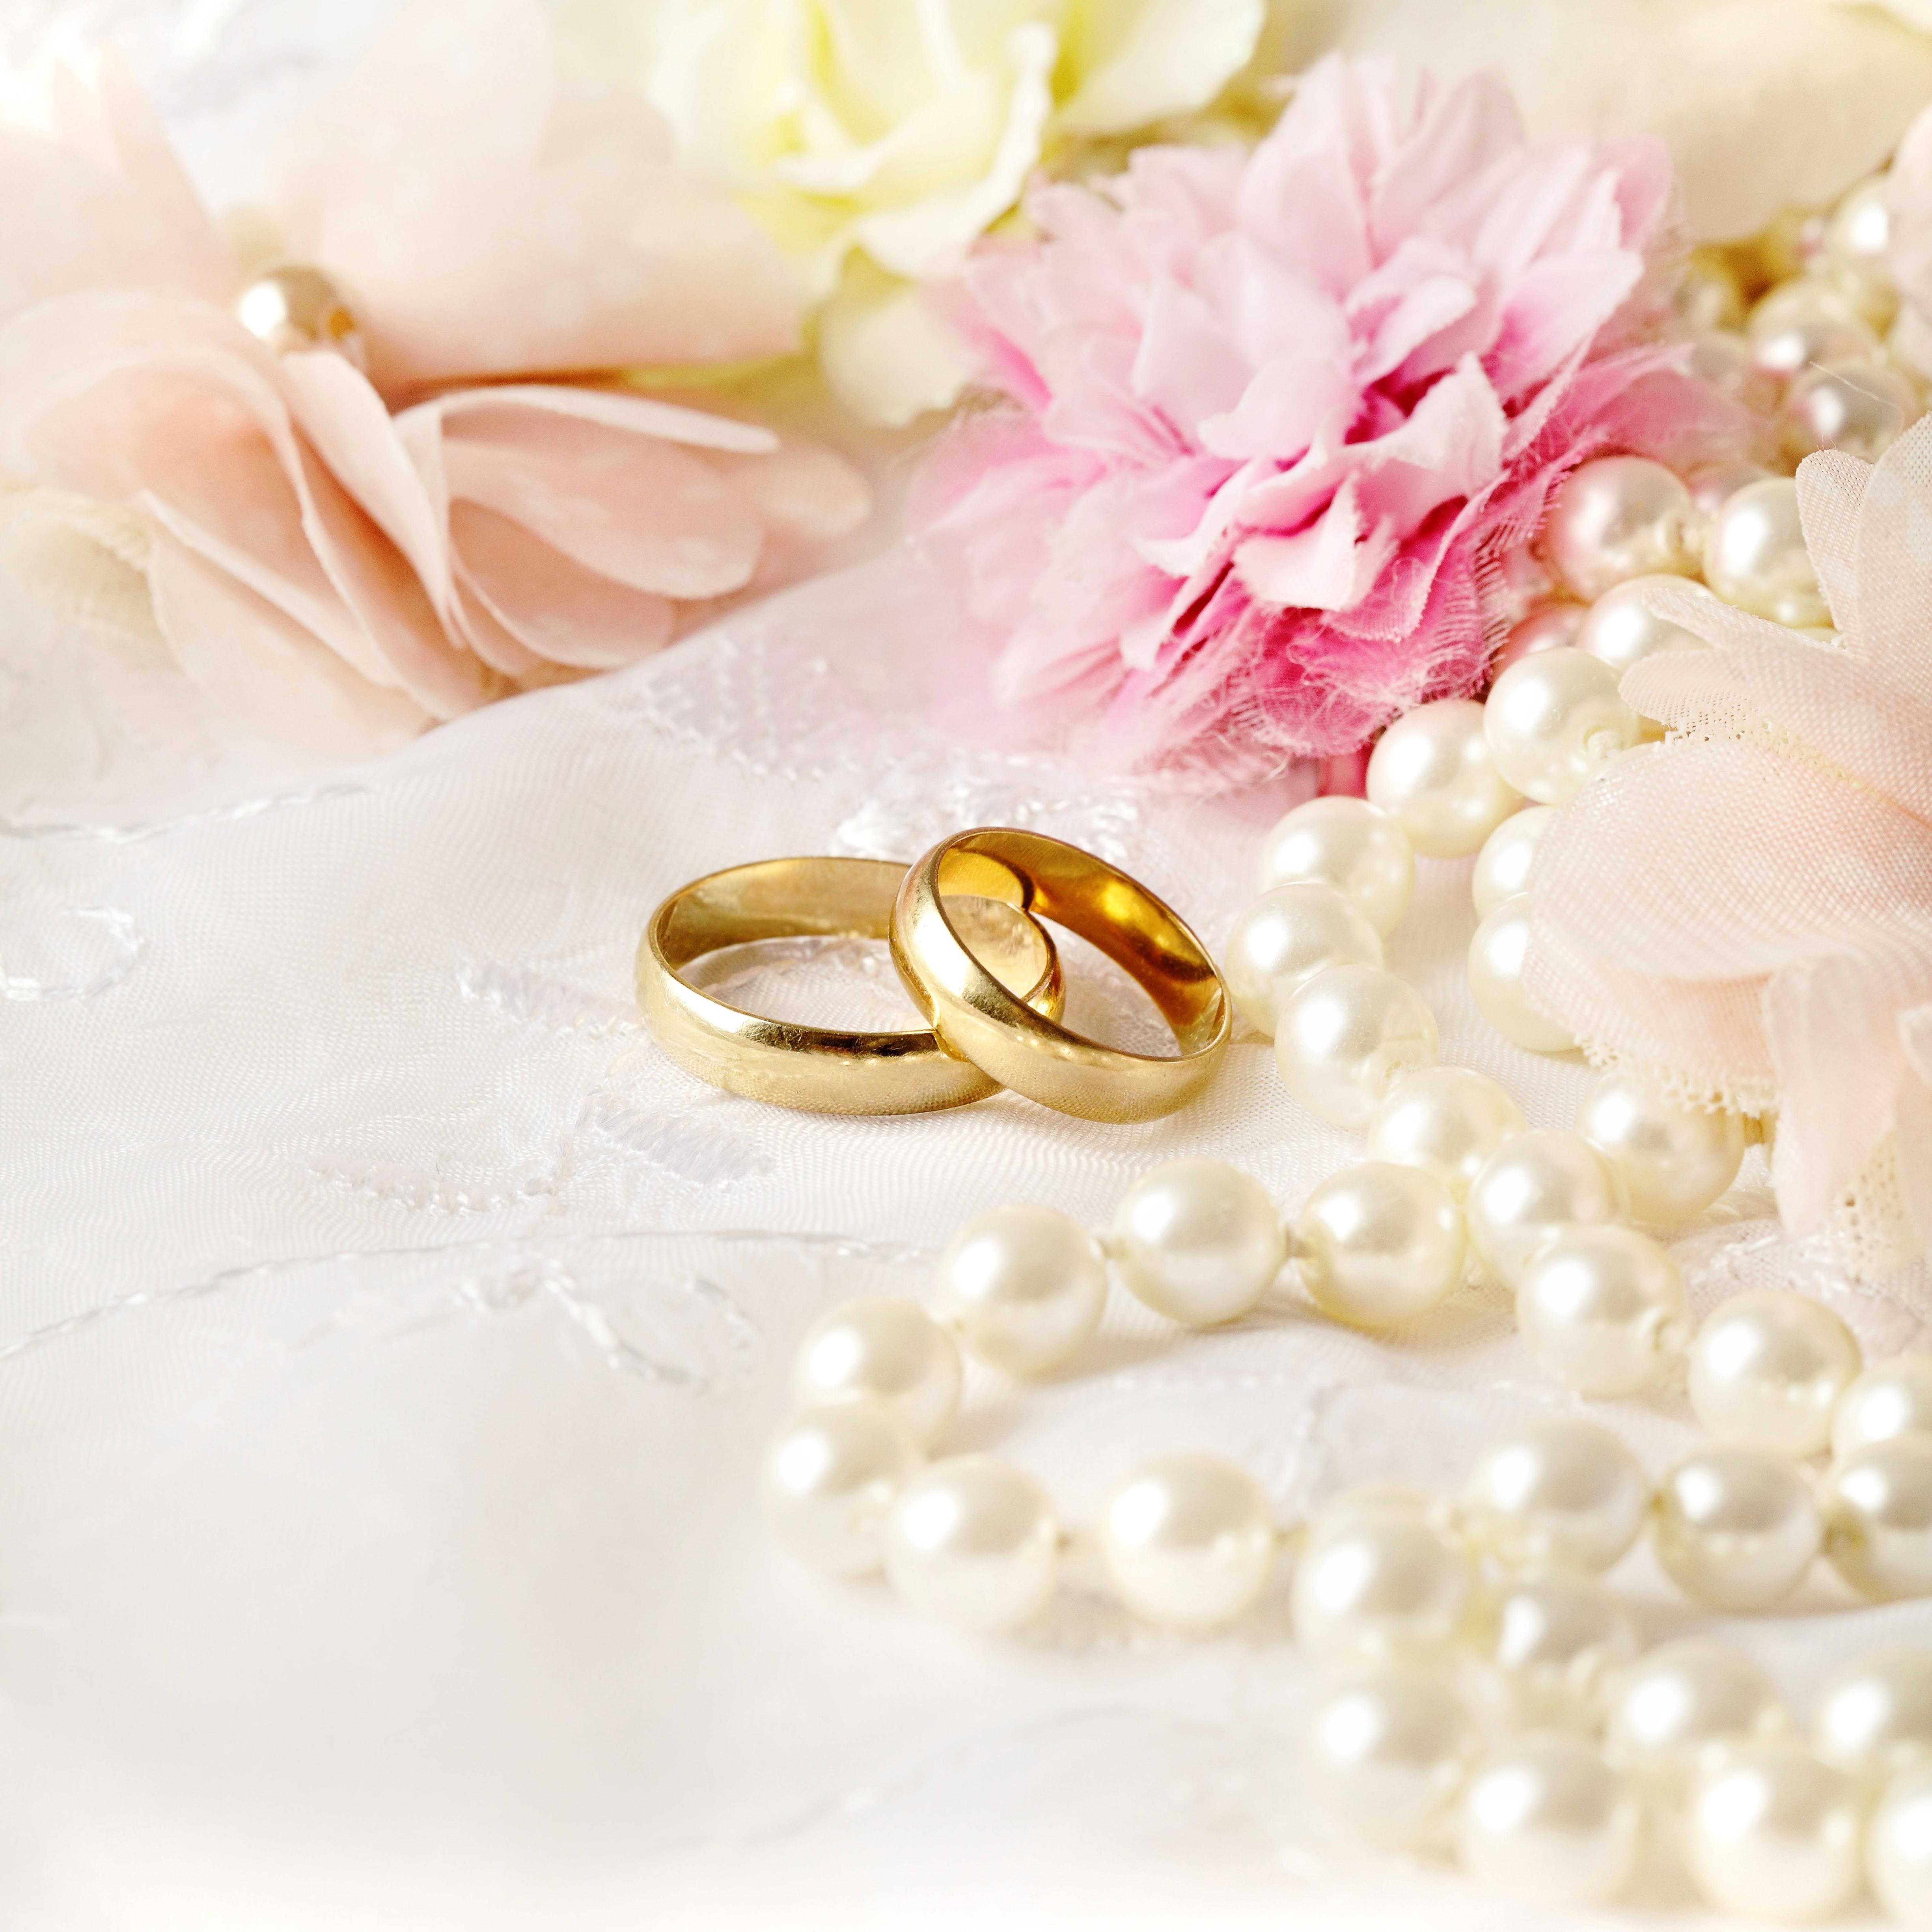 Wedding Background Image